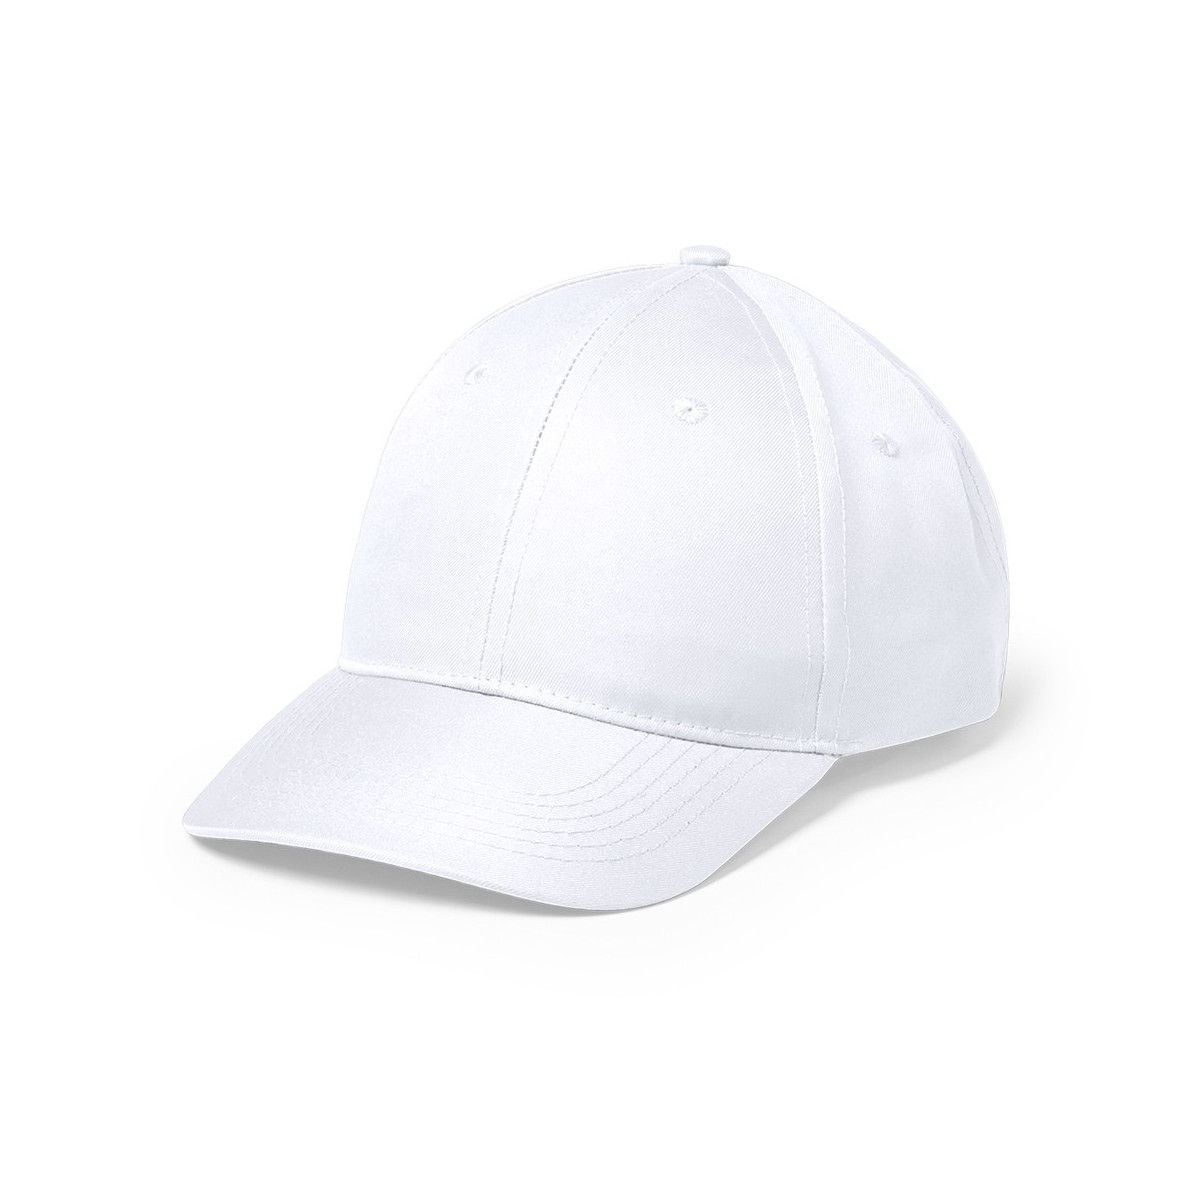 Gorra blanca deportiva especial sublimación